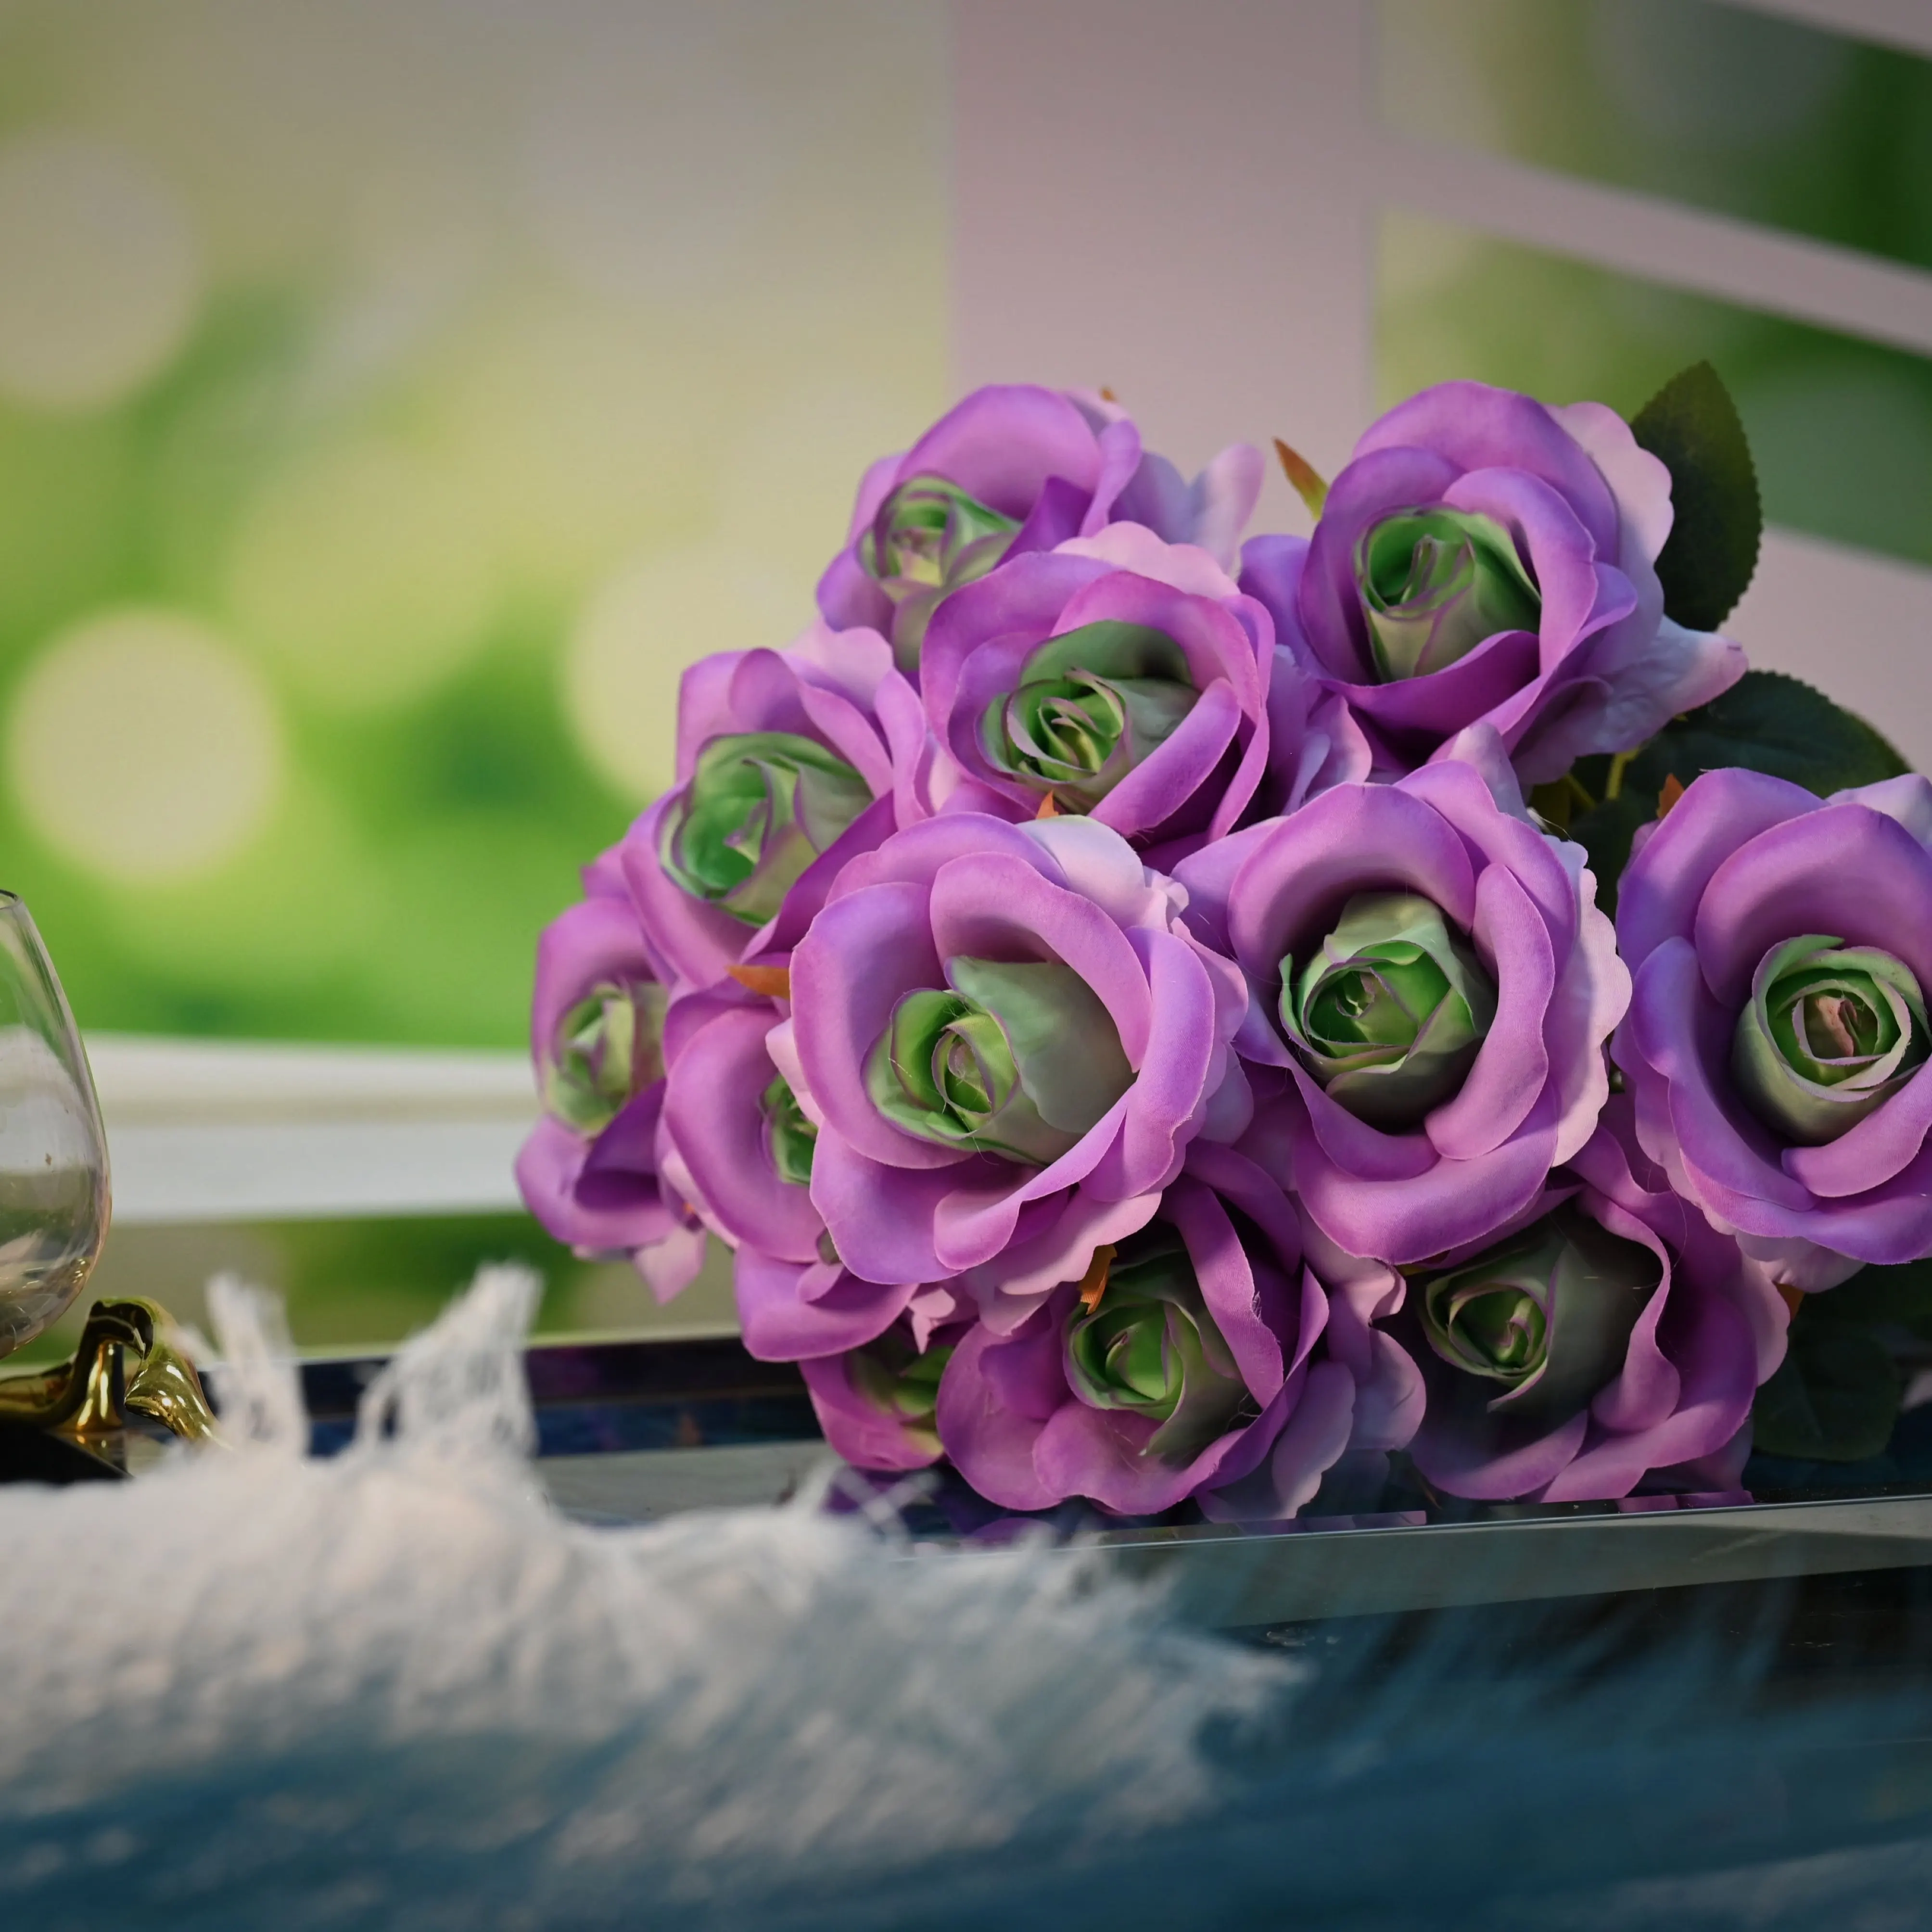 زهور صناعية للزفاف جديدة وملمس حقيقي للزينة من الصين زهور سائبة